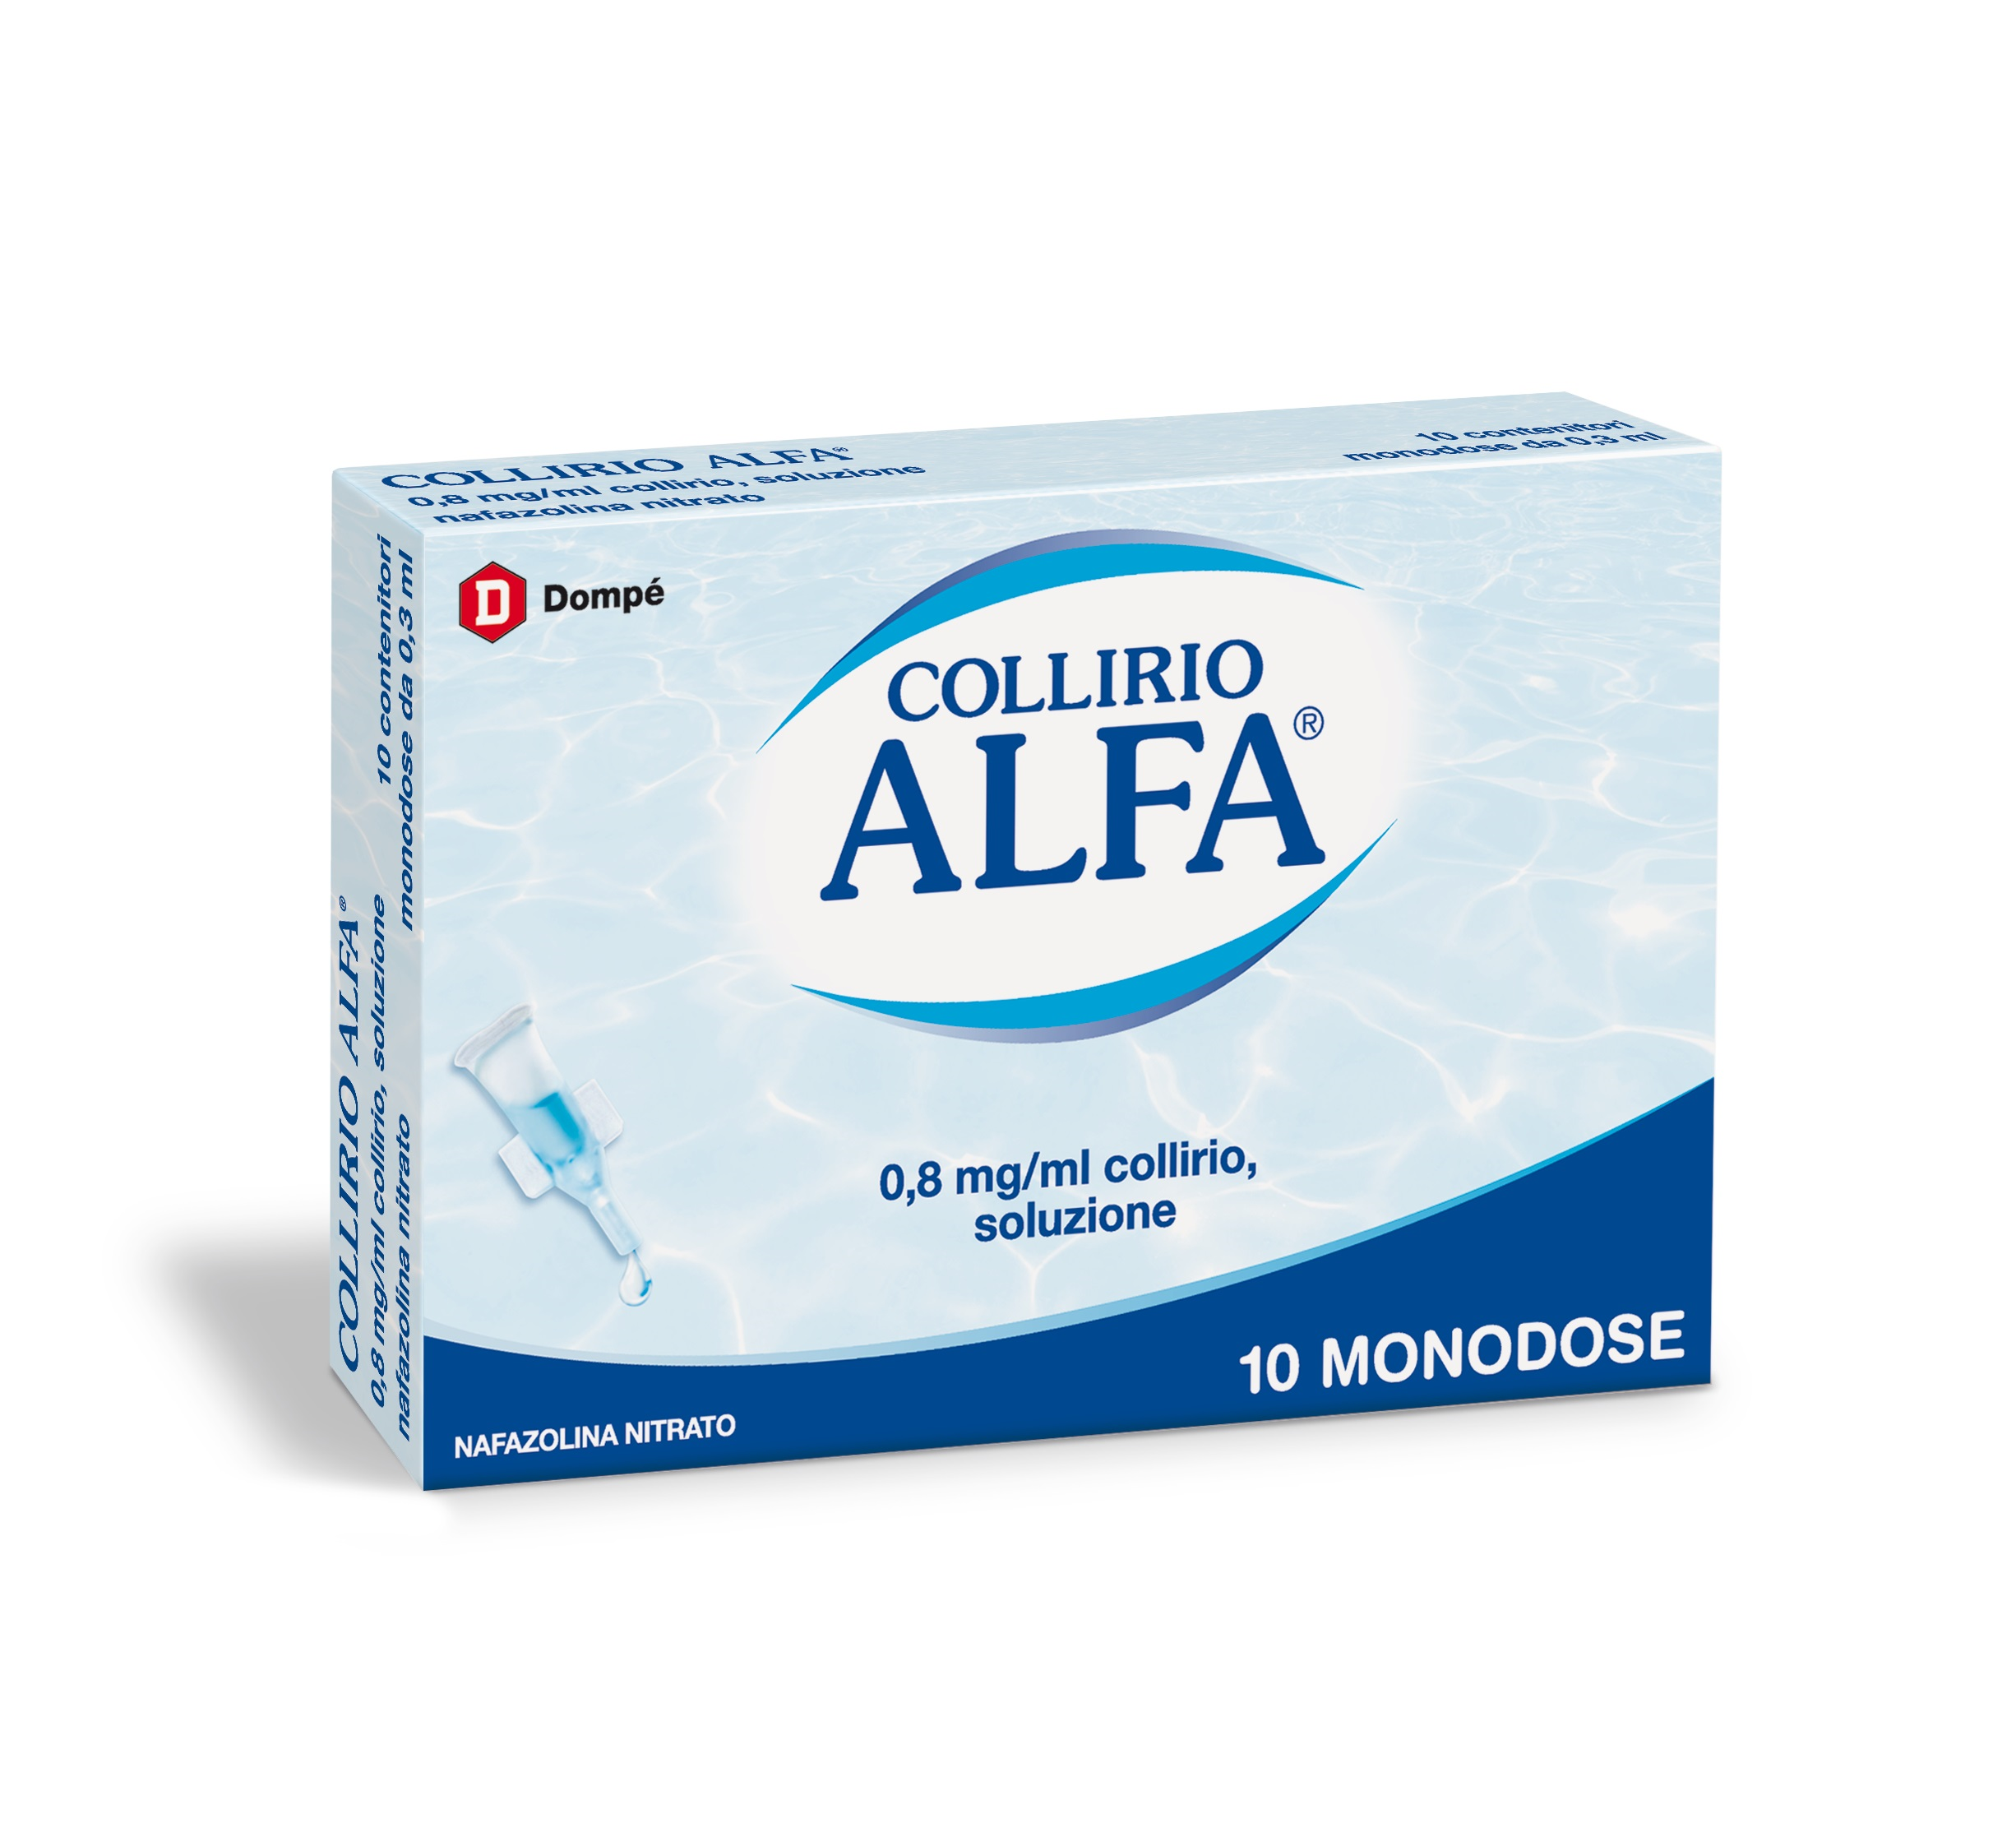 COLLIRIO ALFA DEC 10CONT 0,3ML